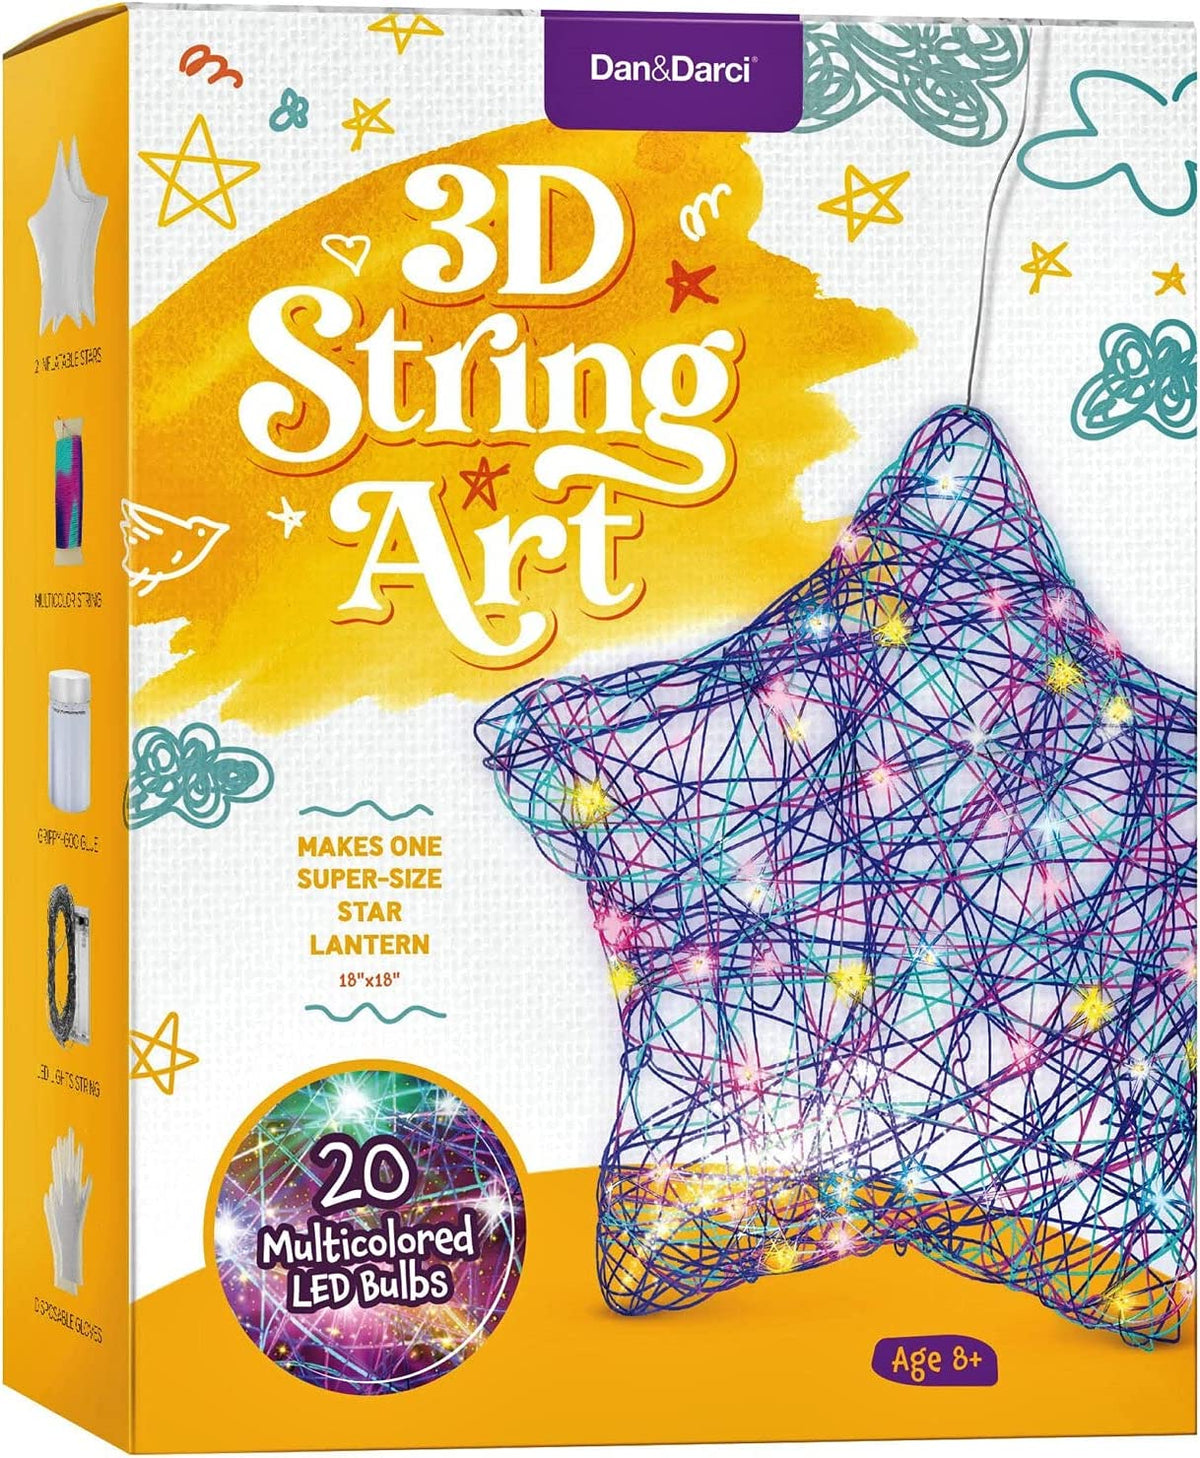 Kit de manualidades para niños, linterna de estrella 3D con iluminación, Dan & Darci